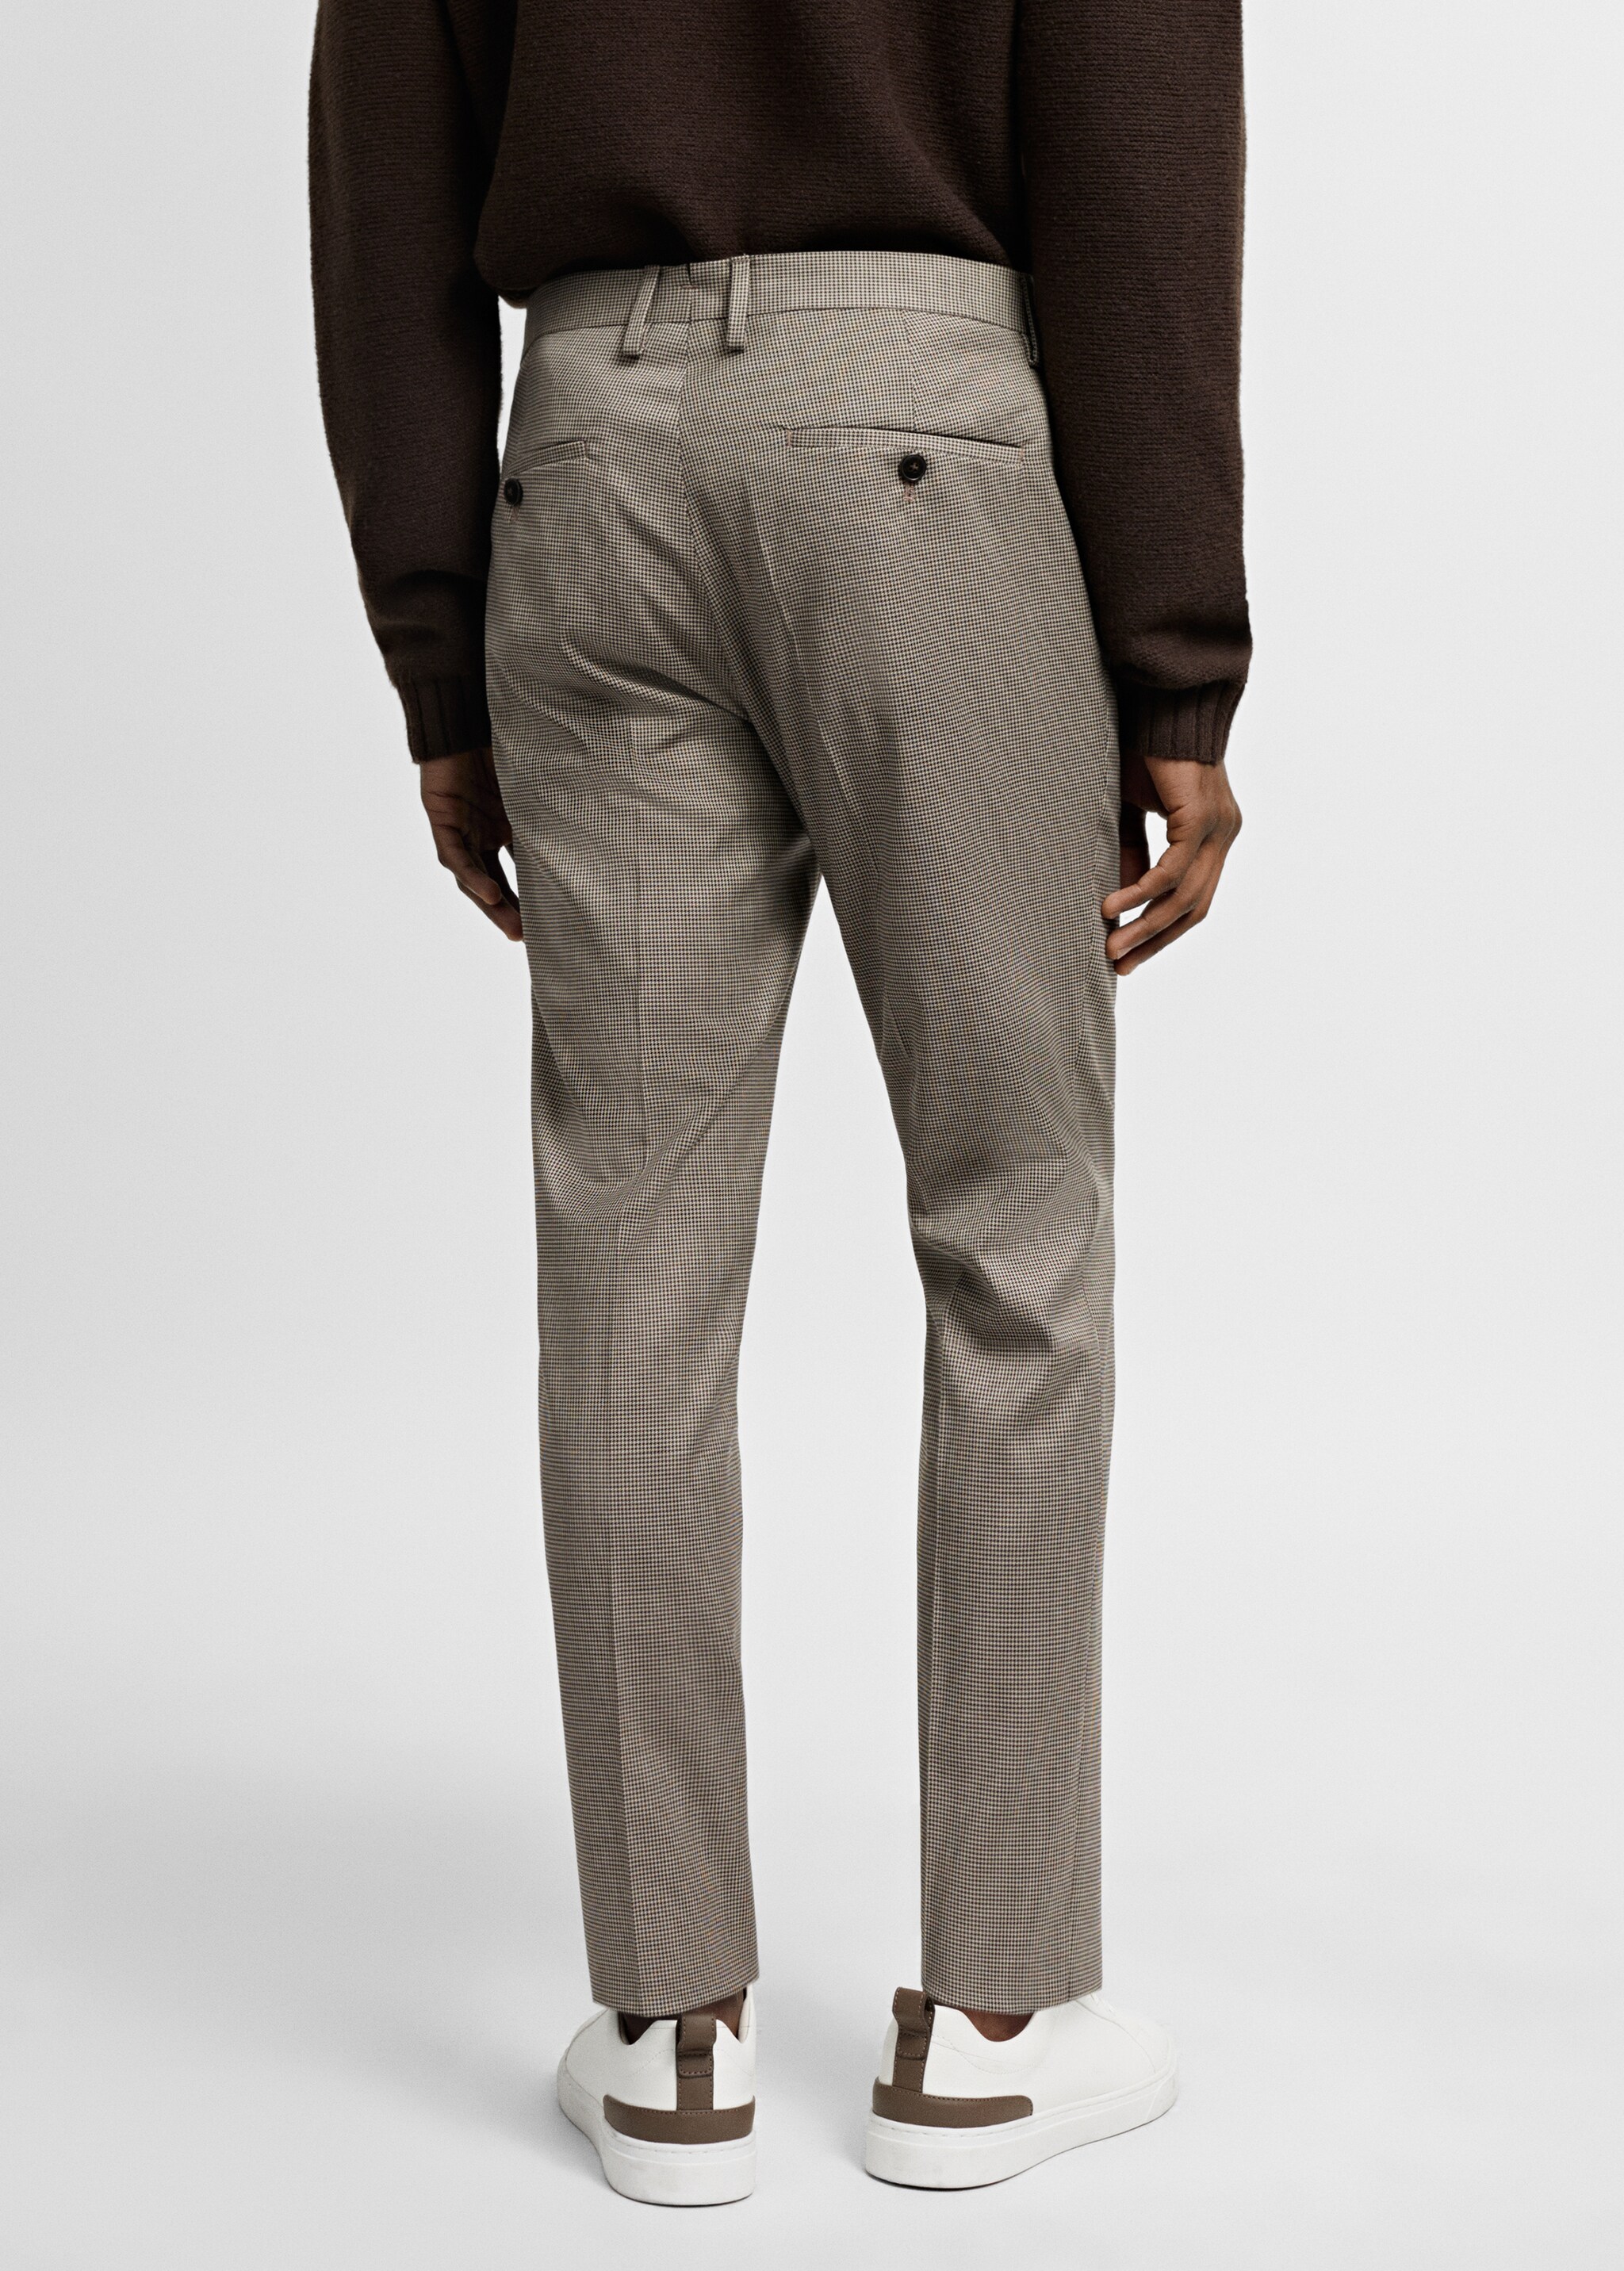 Παντελόνι κοστουμιού super slim fit stretch - Πίσω όψη προϊόντος